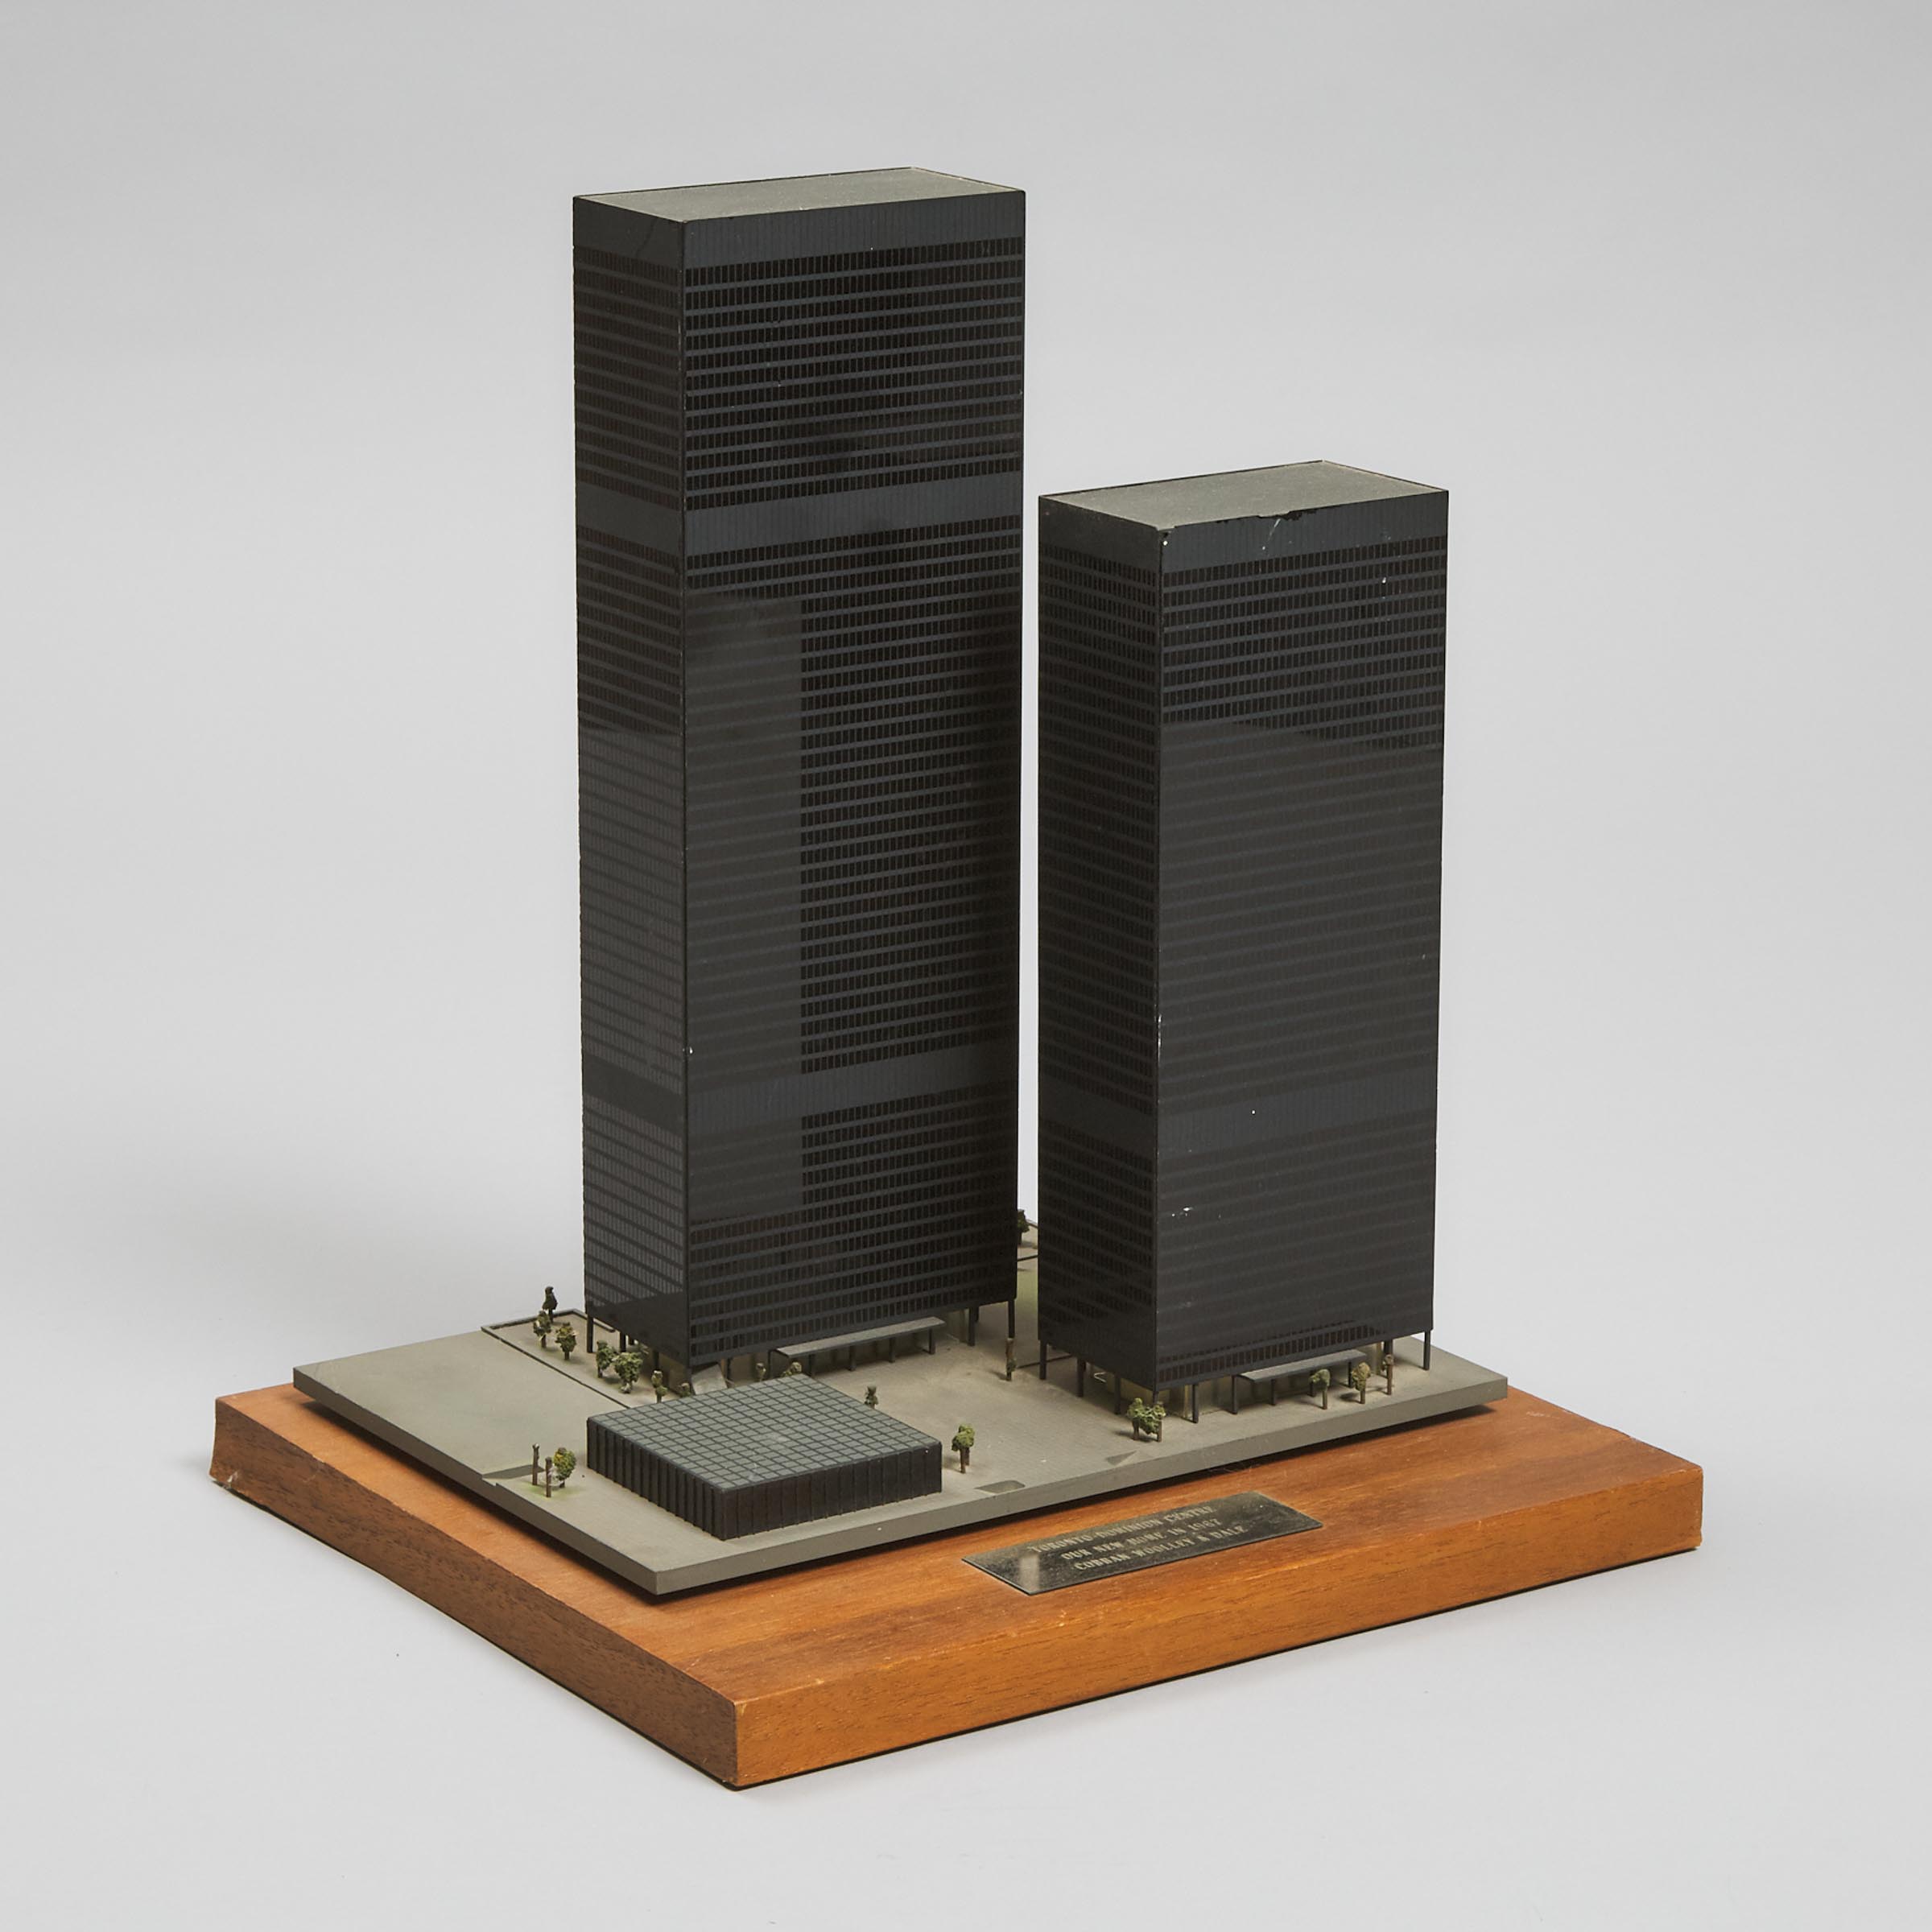 Presentation Scale Model of the Toronto Dominion Centre, 1965